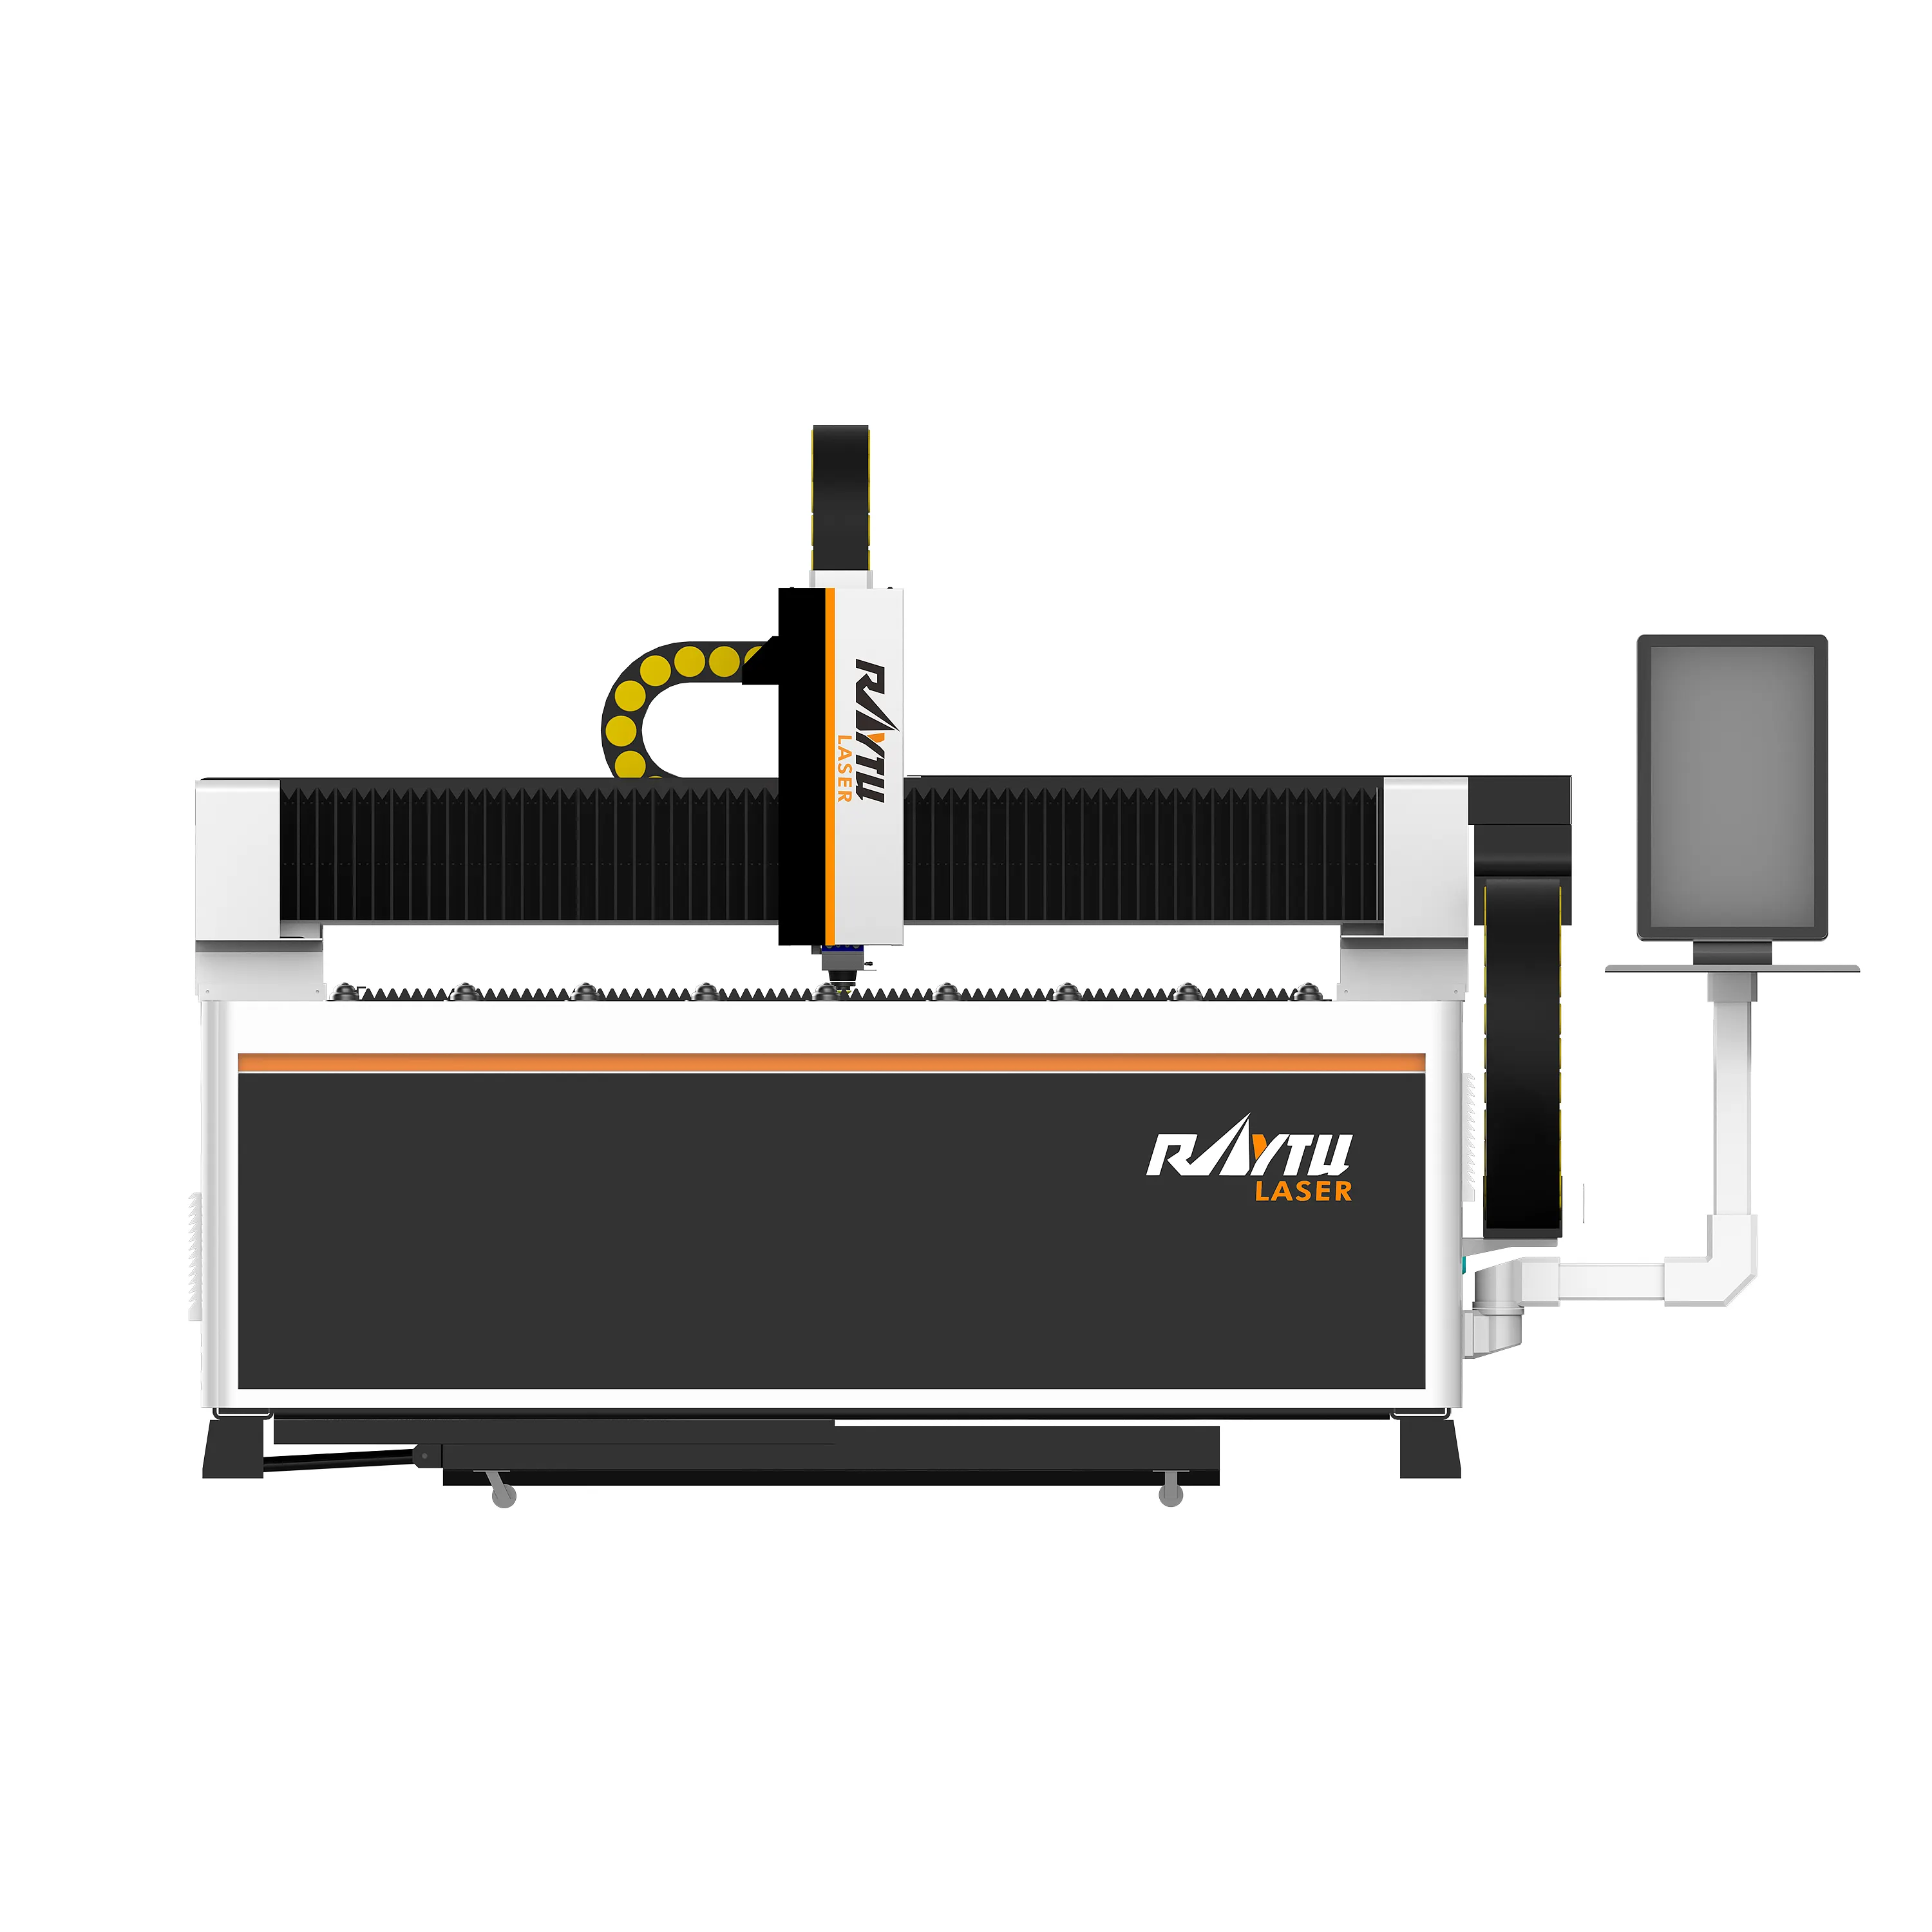 Raytu una serie de máquinas de corte láser de metal, precios asequibles